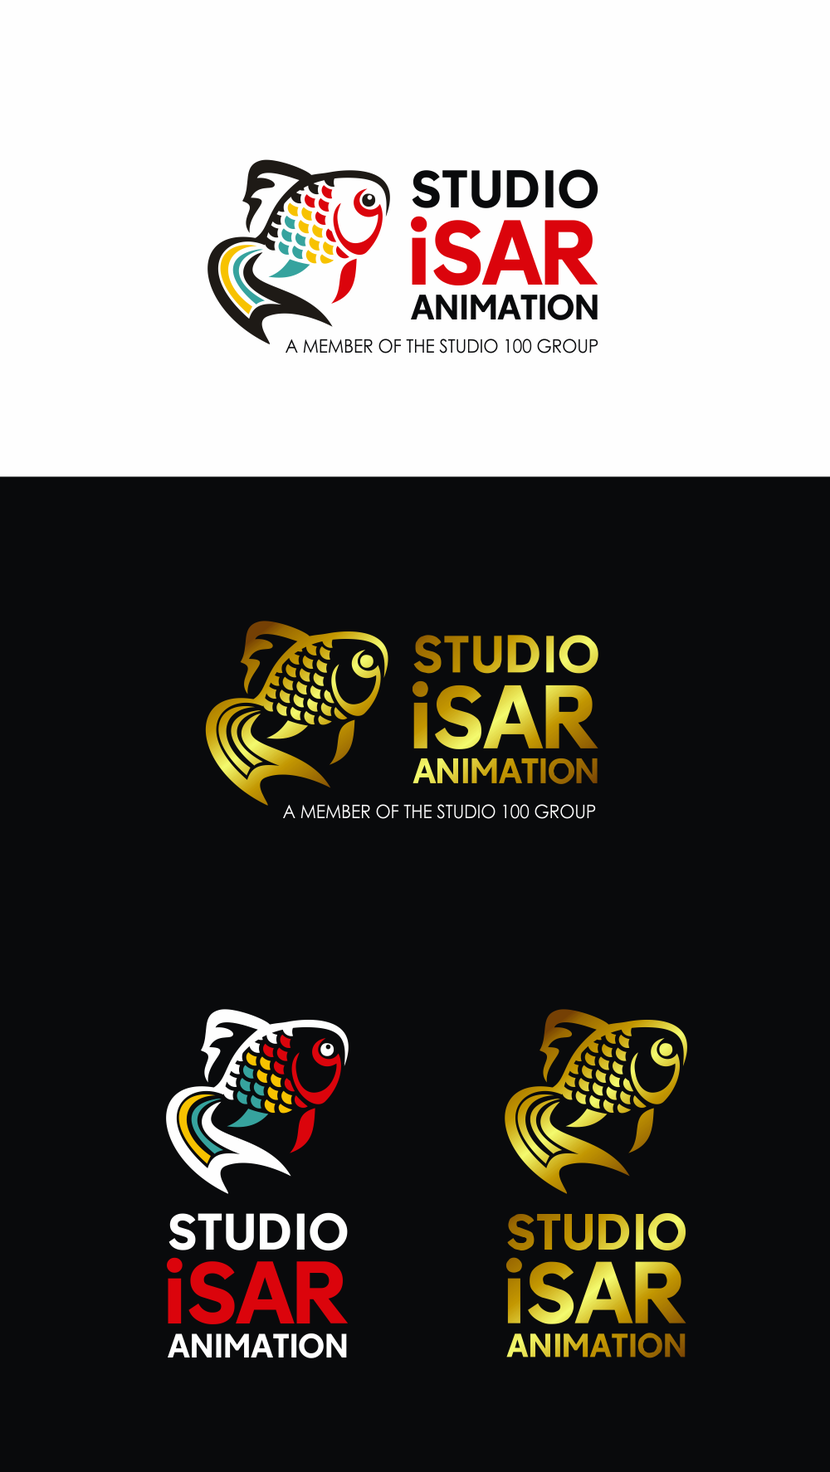 Логотип и фирменный стиль для студии мультипликации Studio Isar Animation  -  автор Лариса Карасева